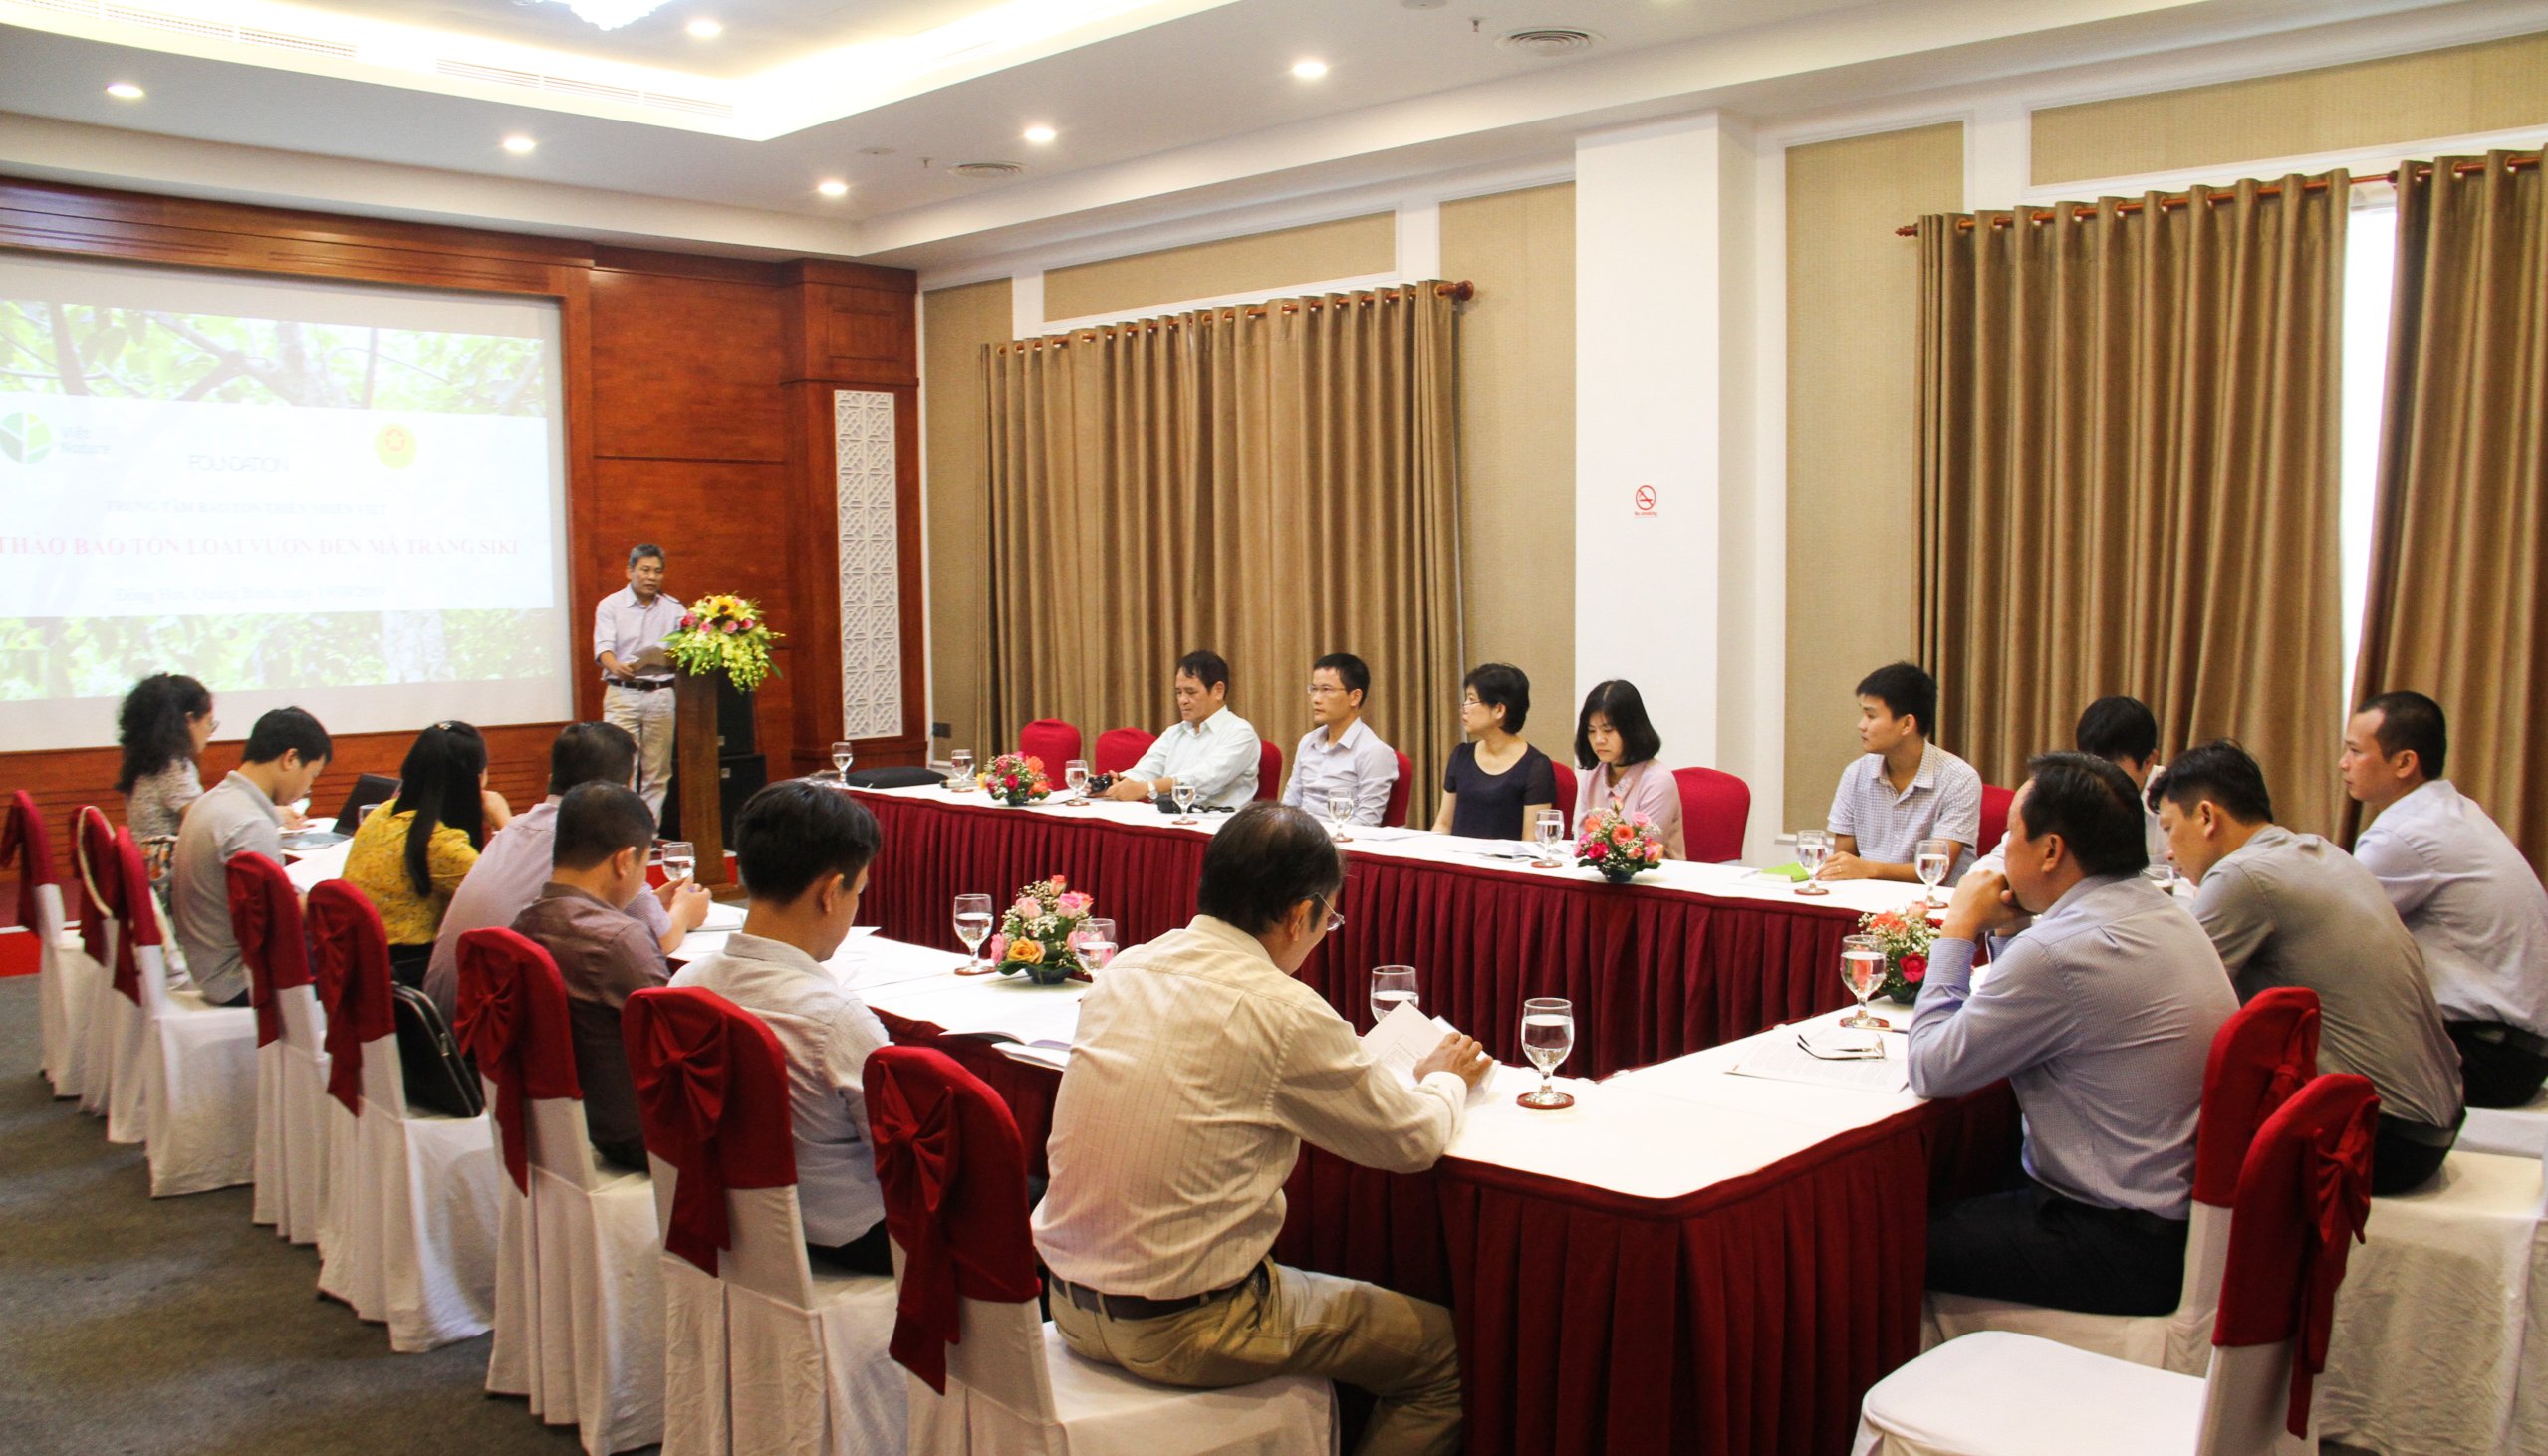 Hội thảo về bảo tồn vượn má trắng siki (Nomascus siki) đã được tổ chức thành công